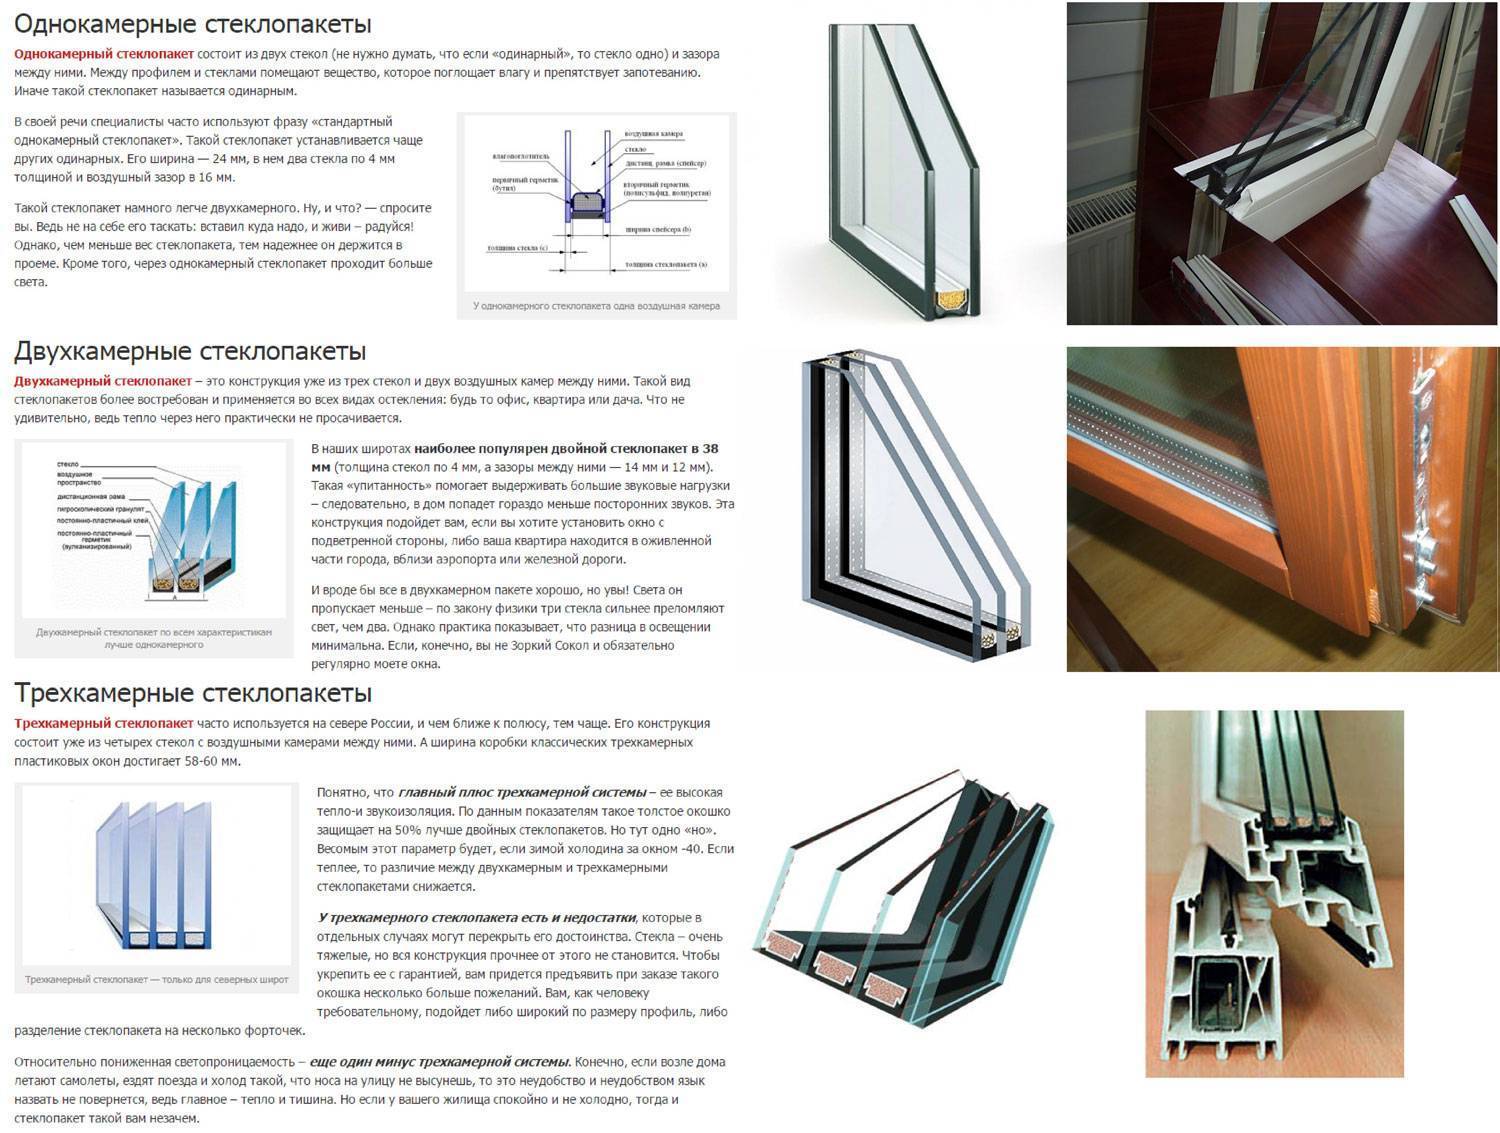 Толщина стеклопакета двухкамерного, технические характеристики, основы выбора 2-камерного стеклопакета, отличия от 1- и 3-камерного